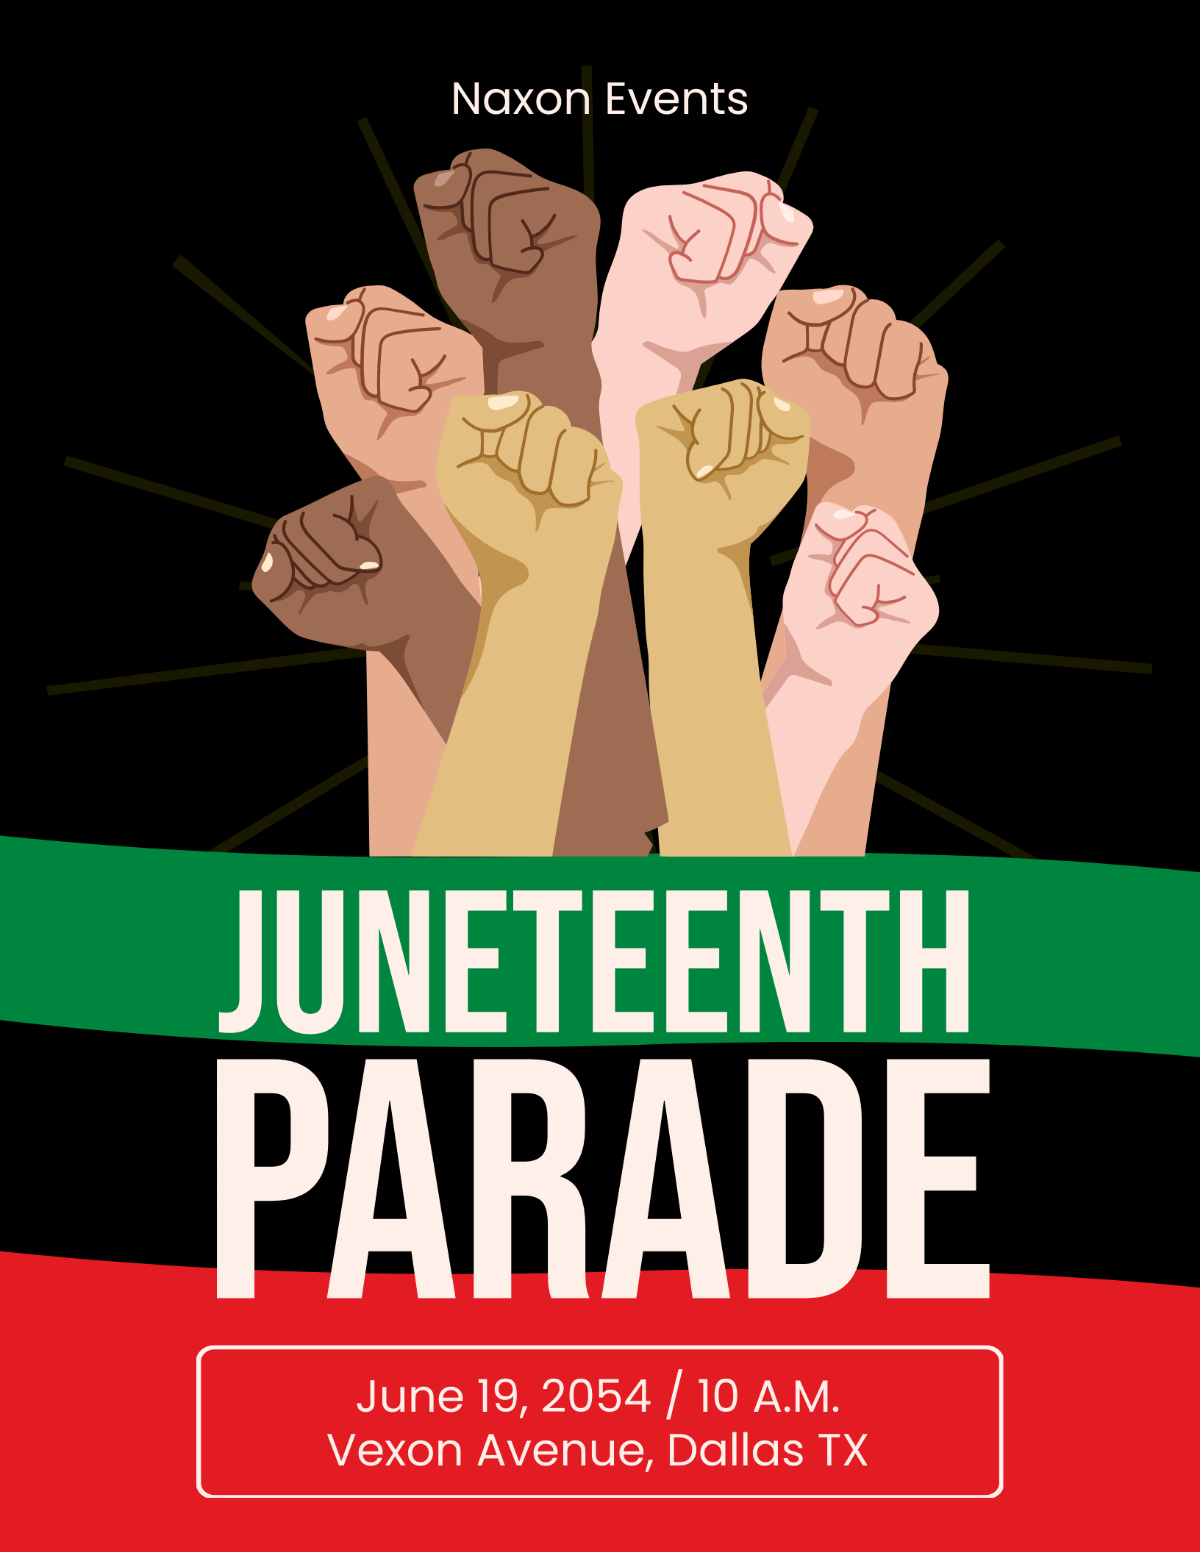 Juneteenth Parade Flyer Template